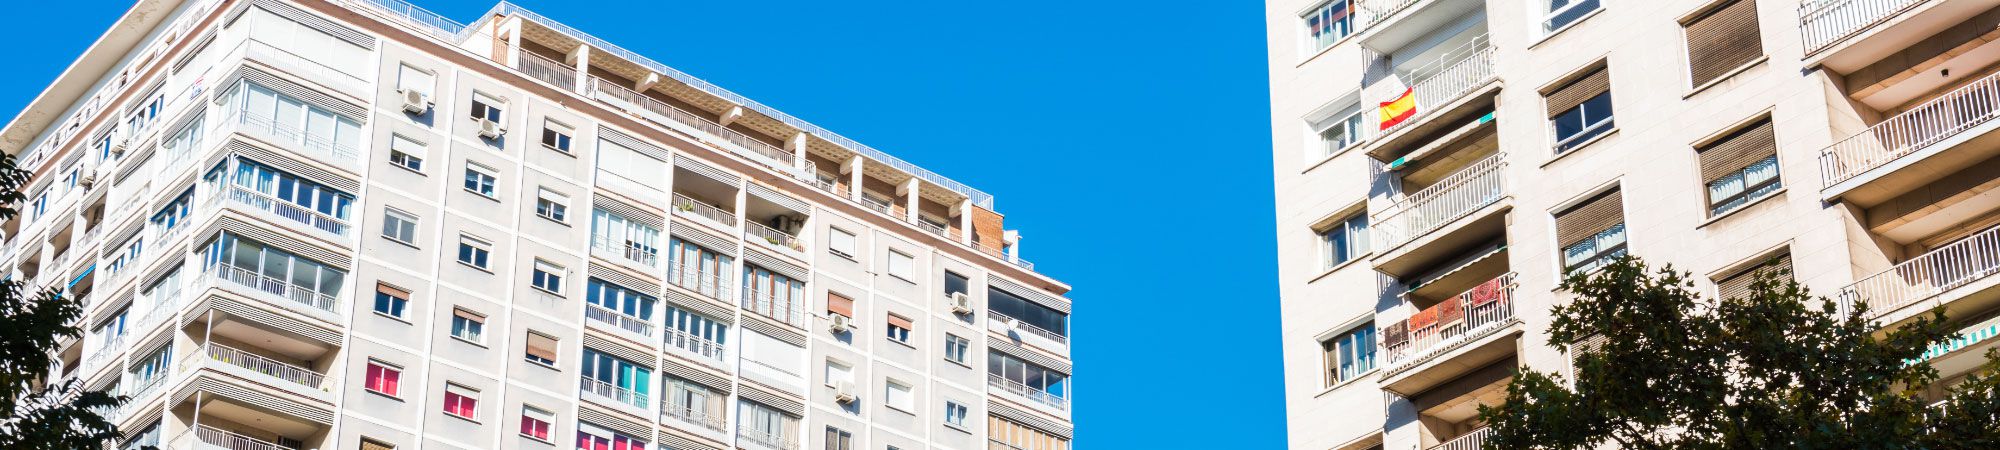 Amplia oferta de pisos, casas y locales  en venta en Torrent y Valencia